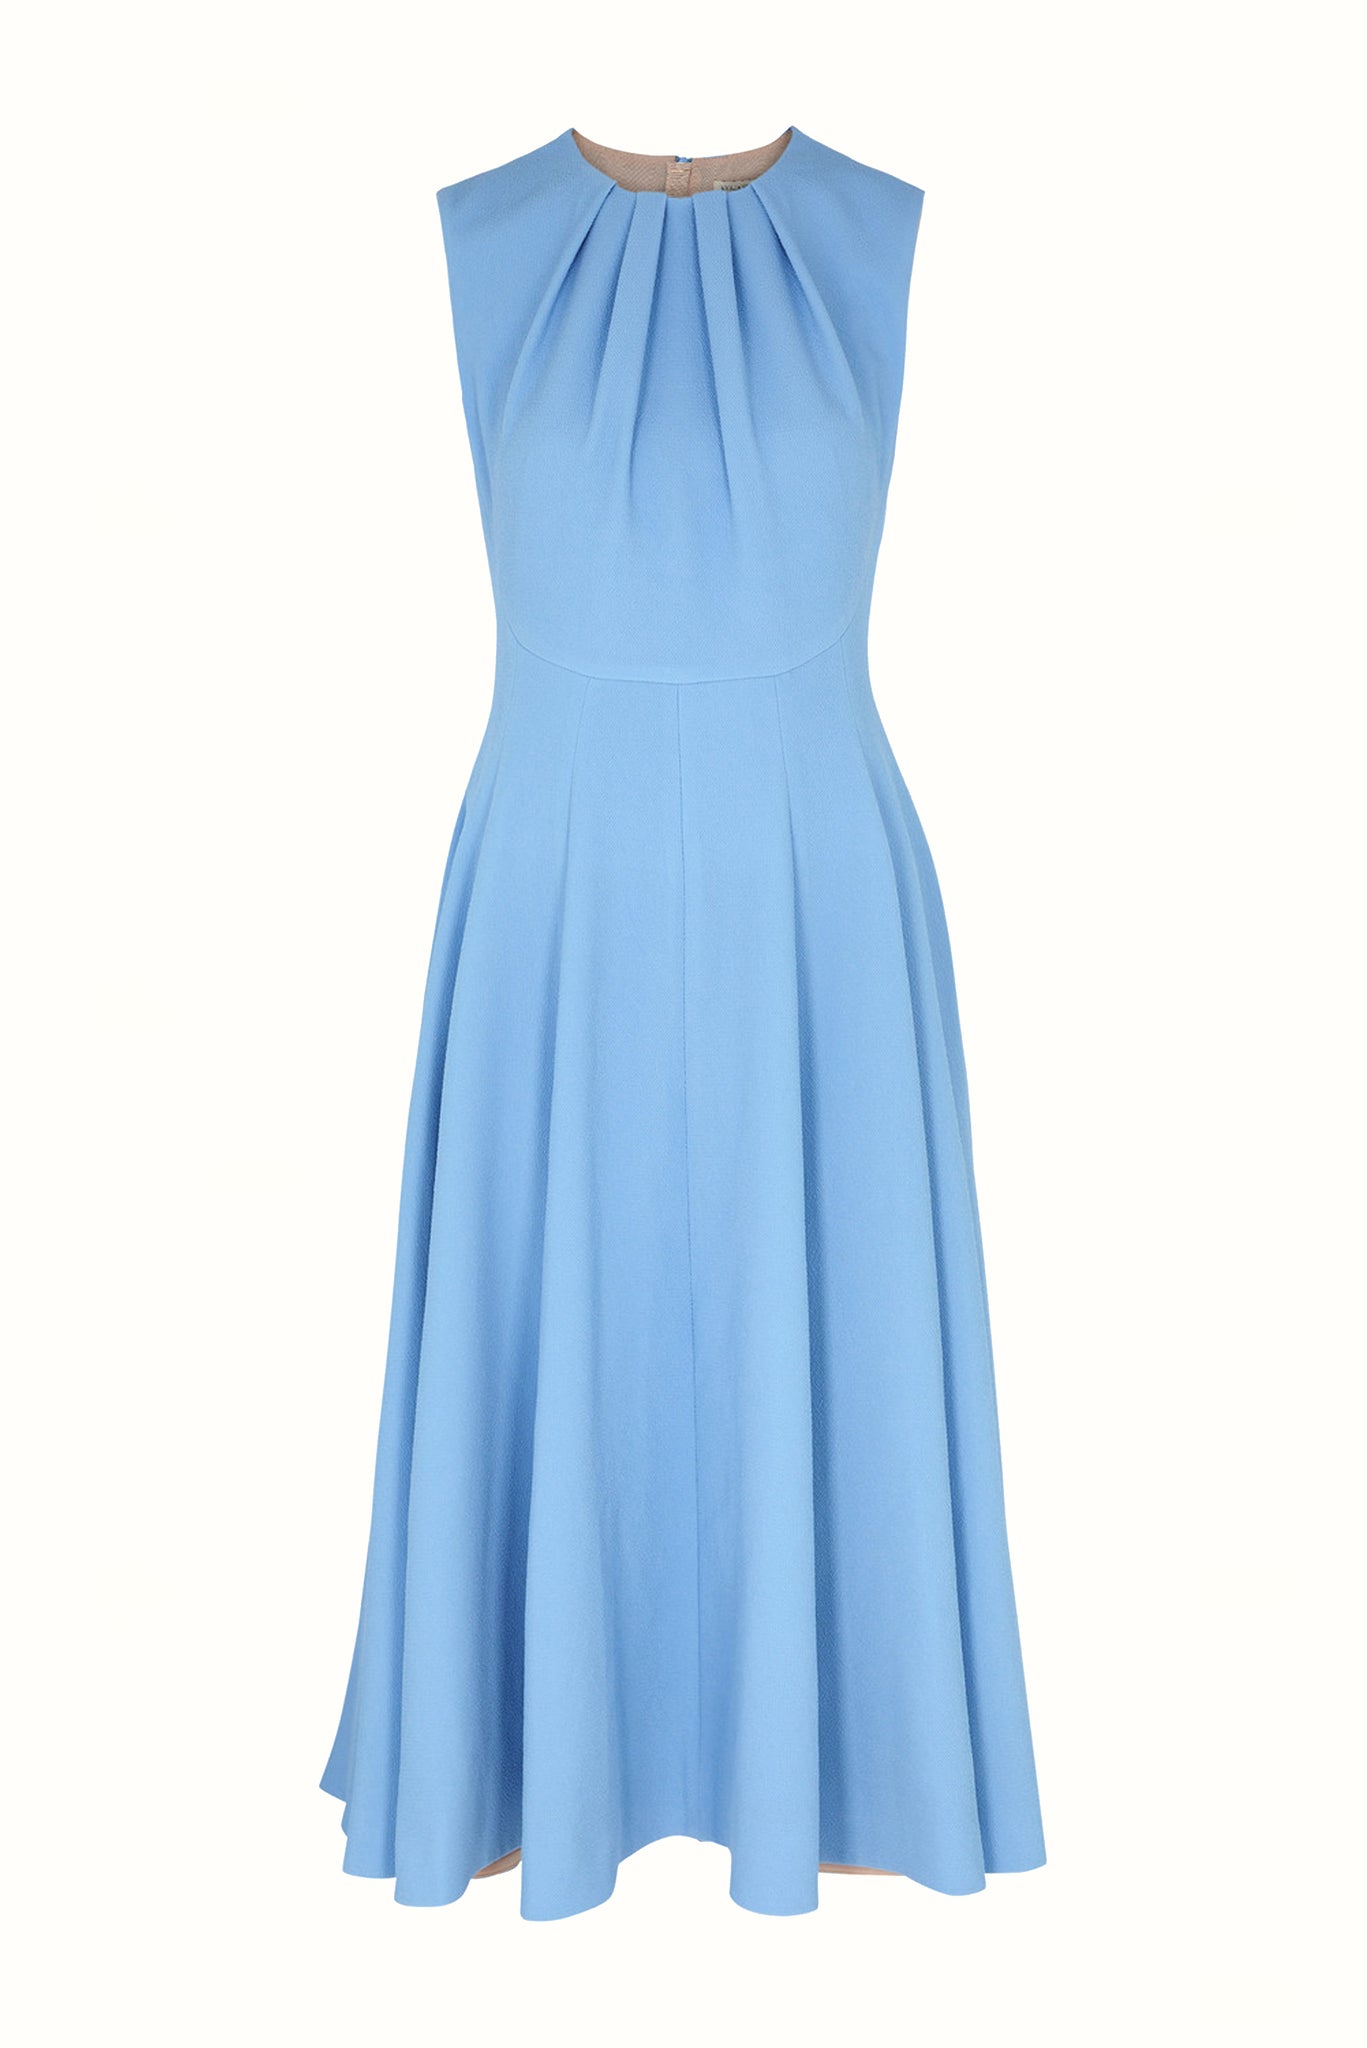 Marlen Dress in Celeste Blue Double Crepe